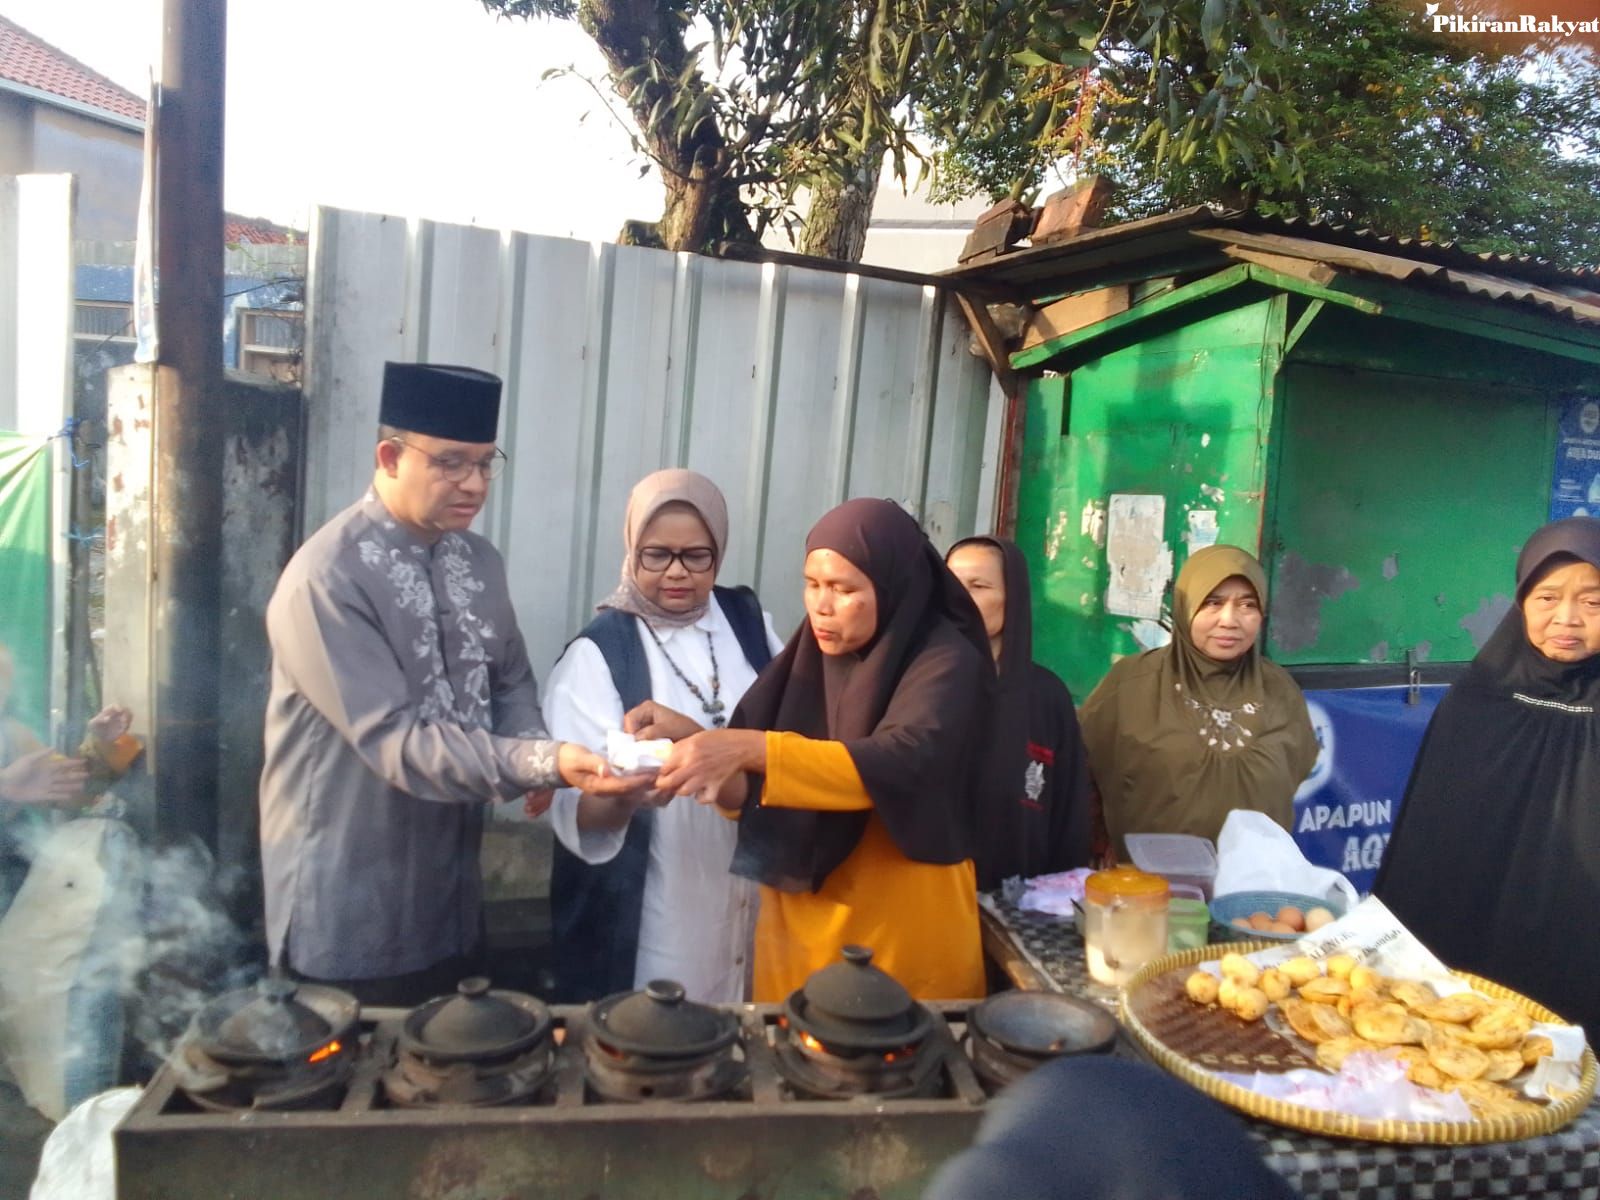 ANIES Baswedan, didampingi istri, membeli sorabi, di sekitar Jalan Jenderal Ahmad Yani, Minggu, 12 Maret 2023.